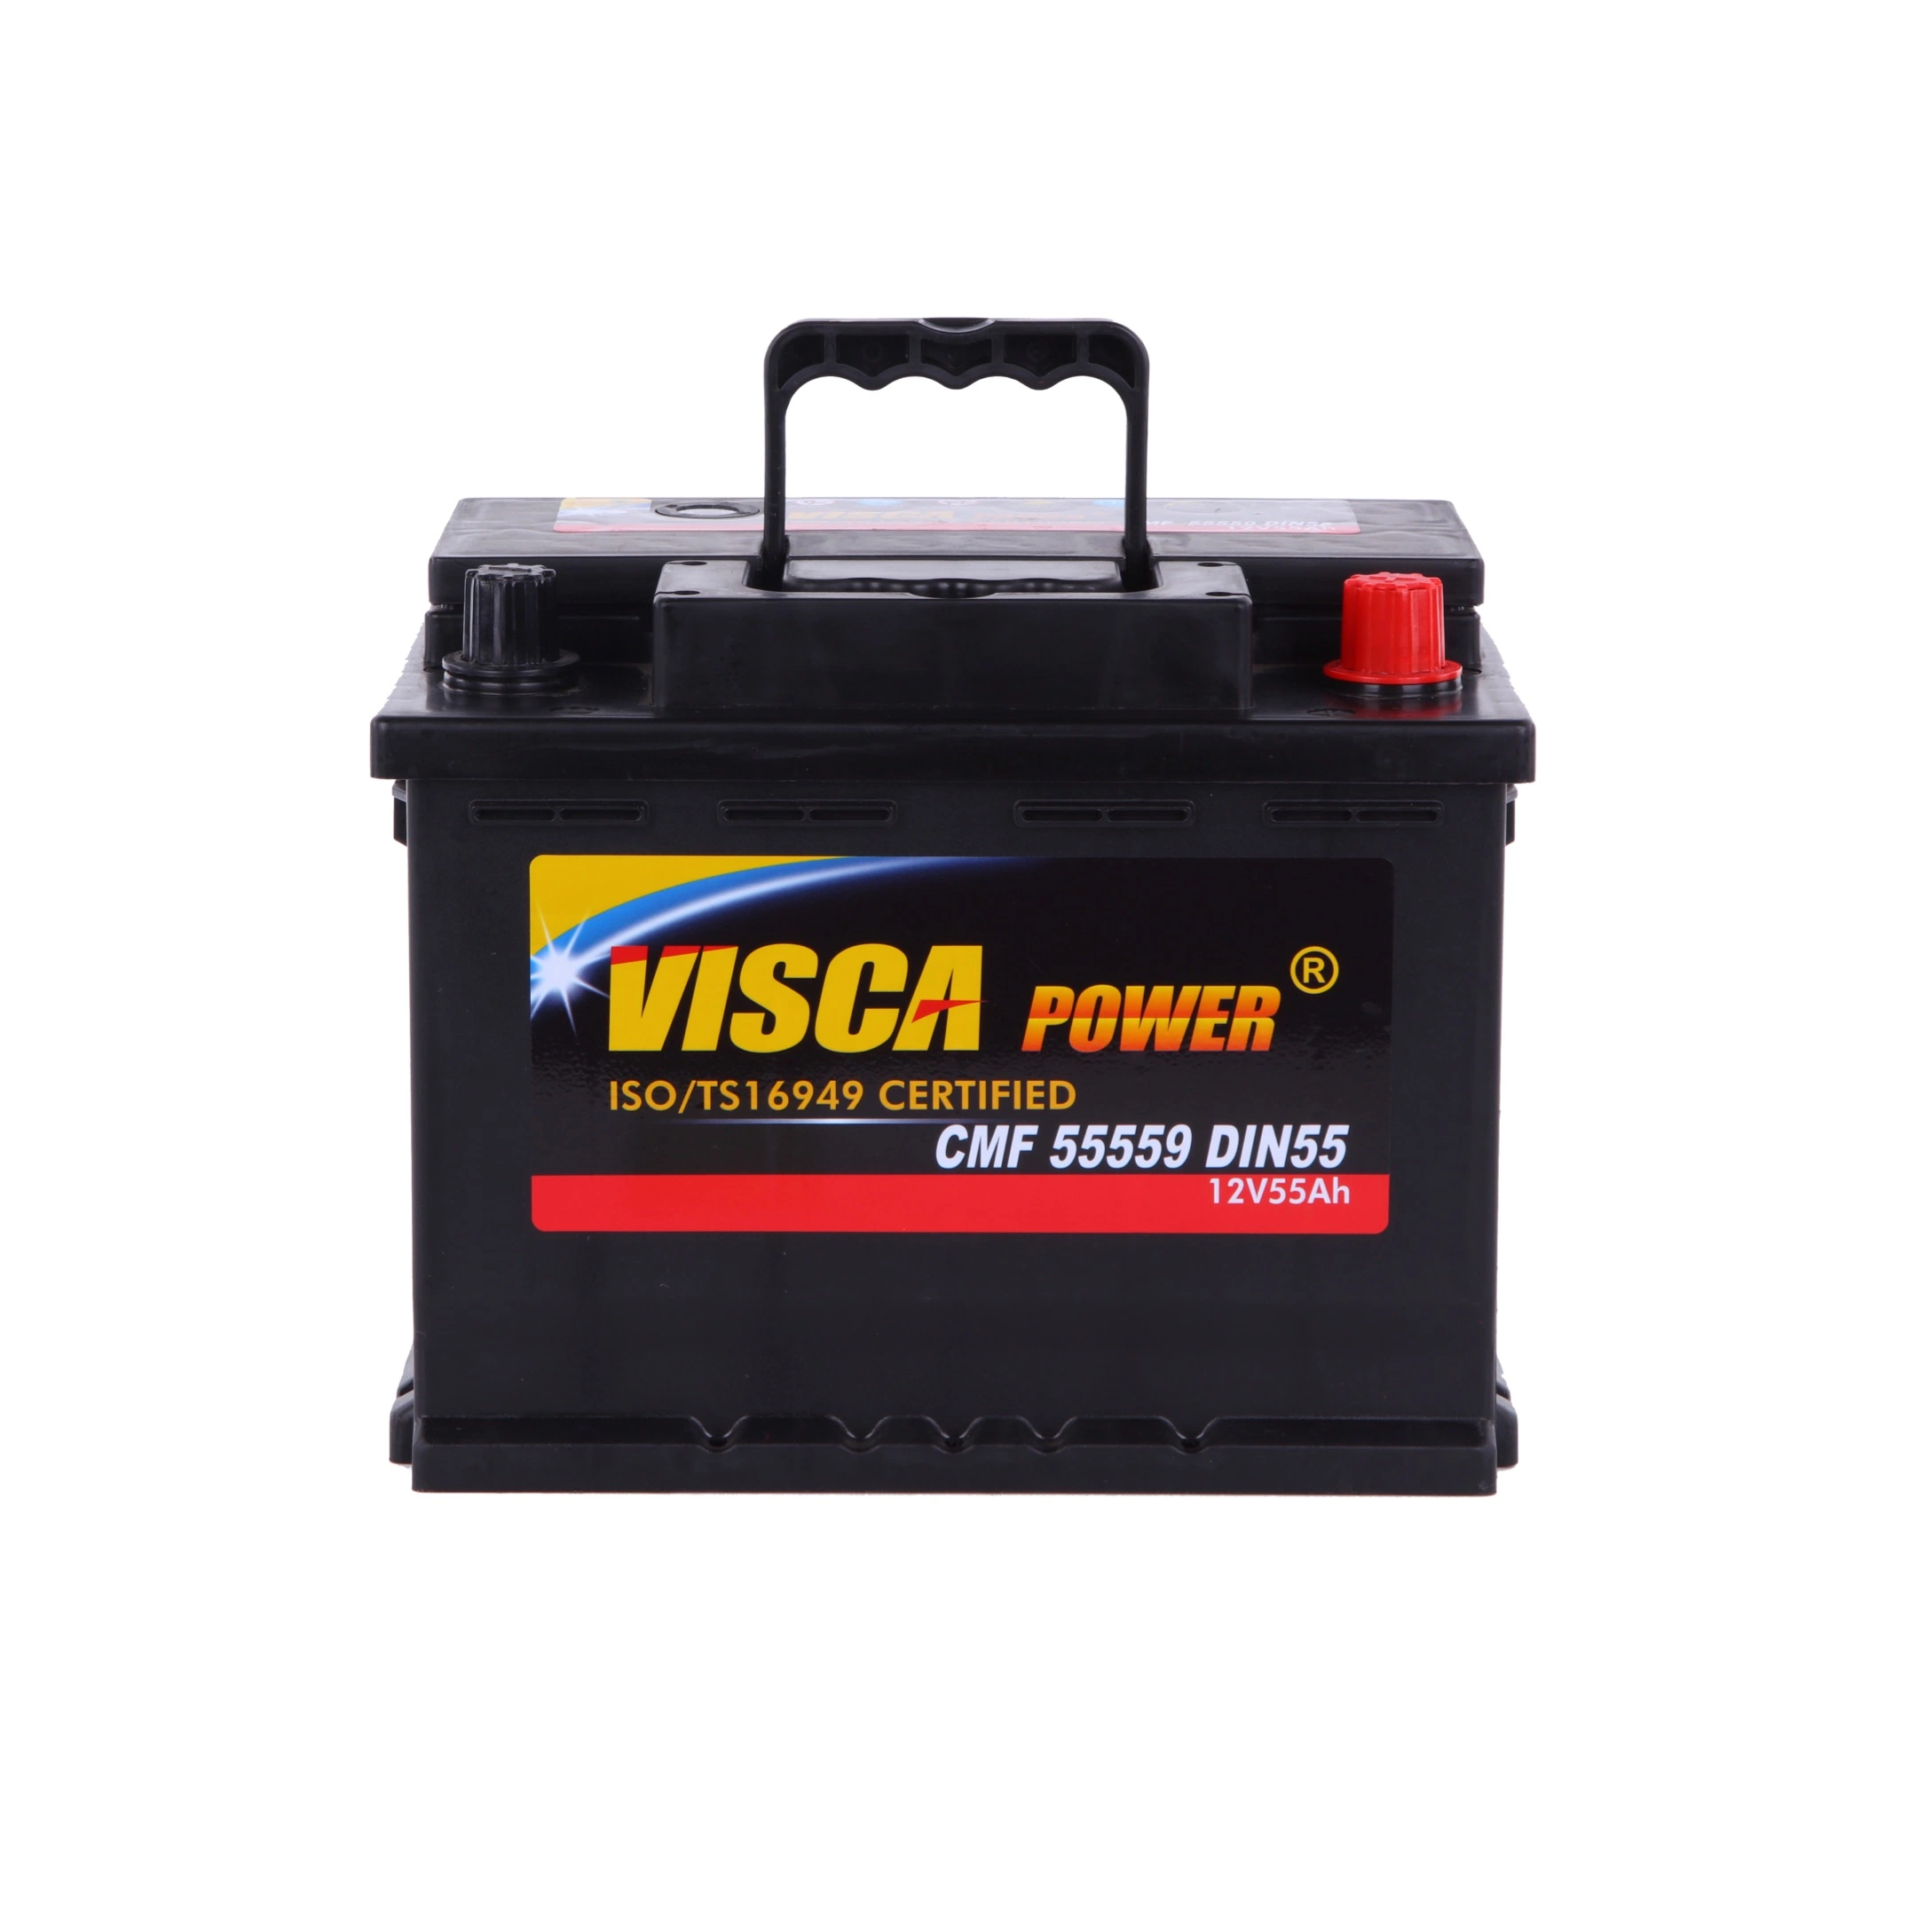 Wartungsfreie Autobatterie 55559 12V 55ah (MF DIN55) Visca Power Sealed Bleiakku Factory Supply